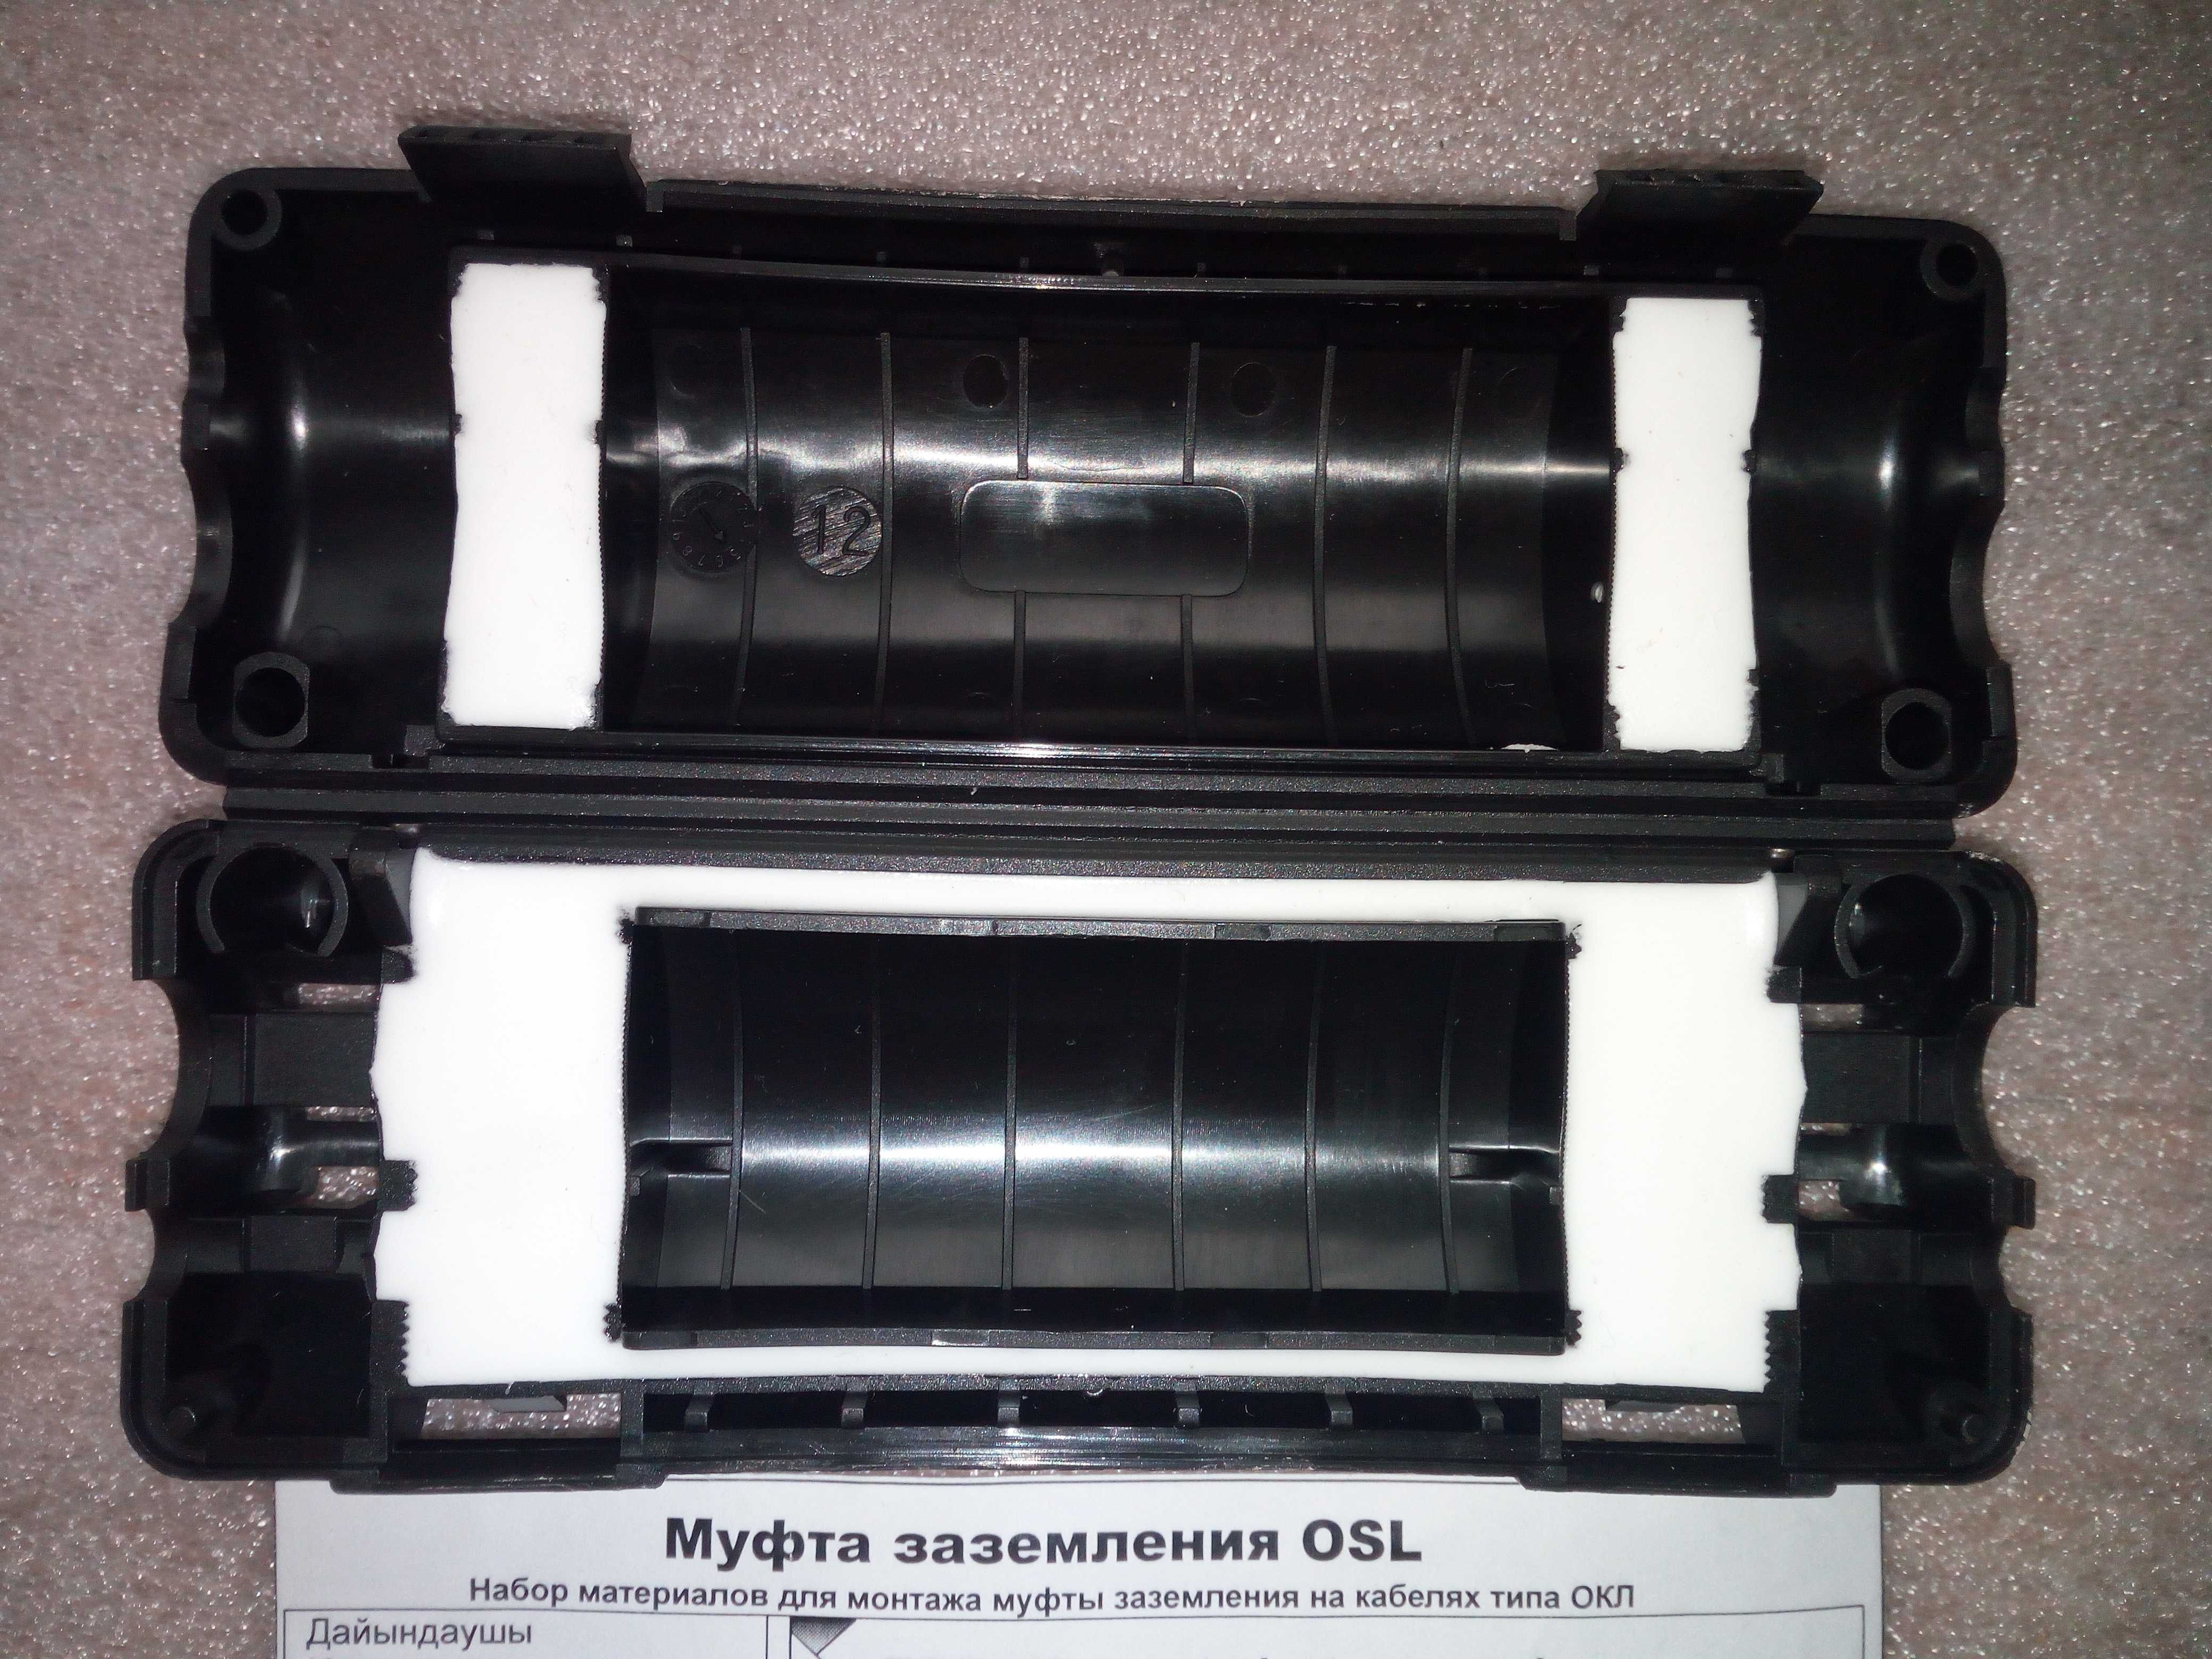 Муфта оптическая OSL. Муфта МКМ3 для кабеля ТПП.